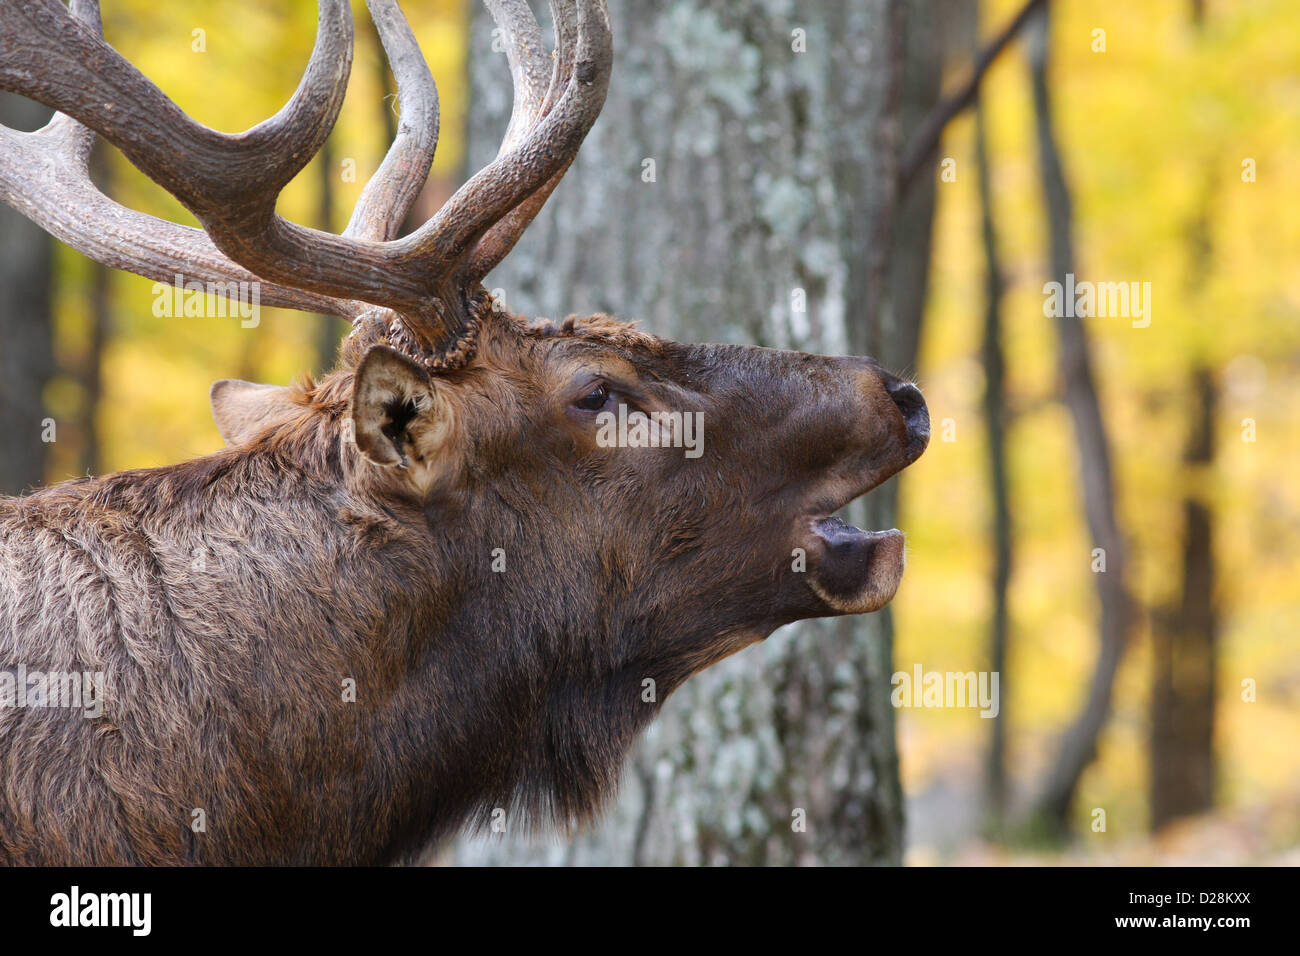 Bull Red deer (Cervus elaphus) in autumn Stock Photo